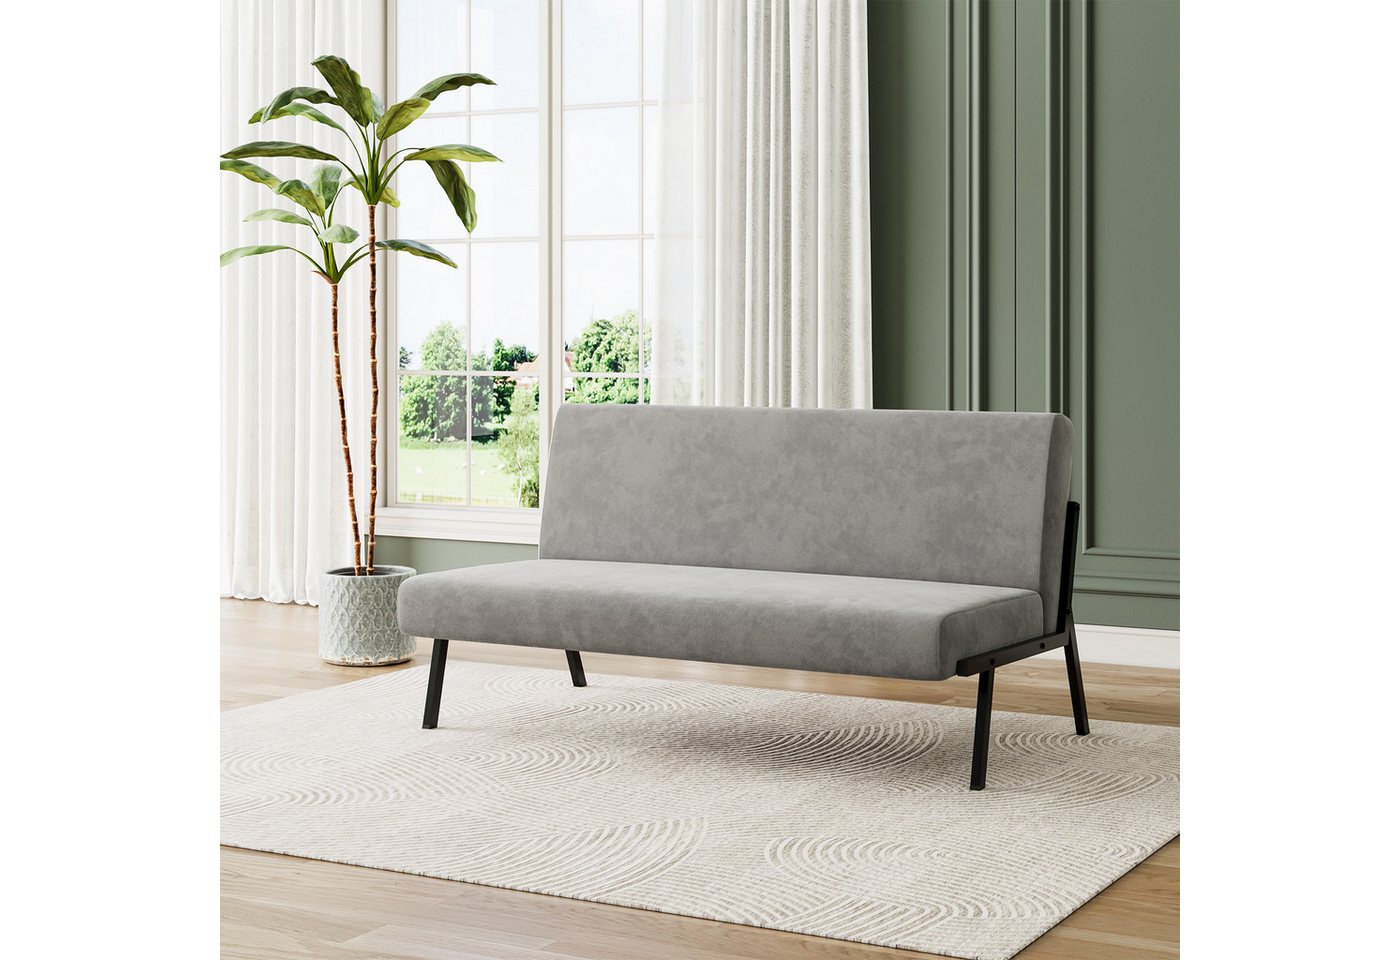 OUNUO Sofa 2 Sitzer Couch mit Metallrahmen Doppelsofa 150kg belastbar Grau günstig online kaufen